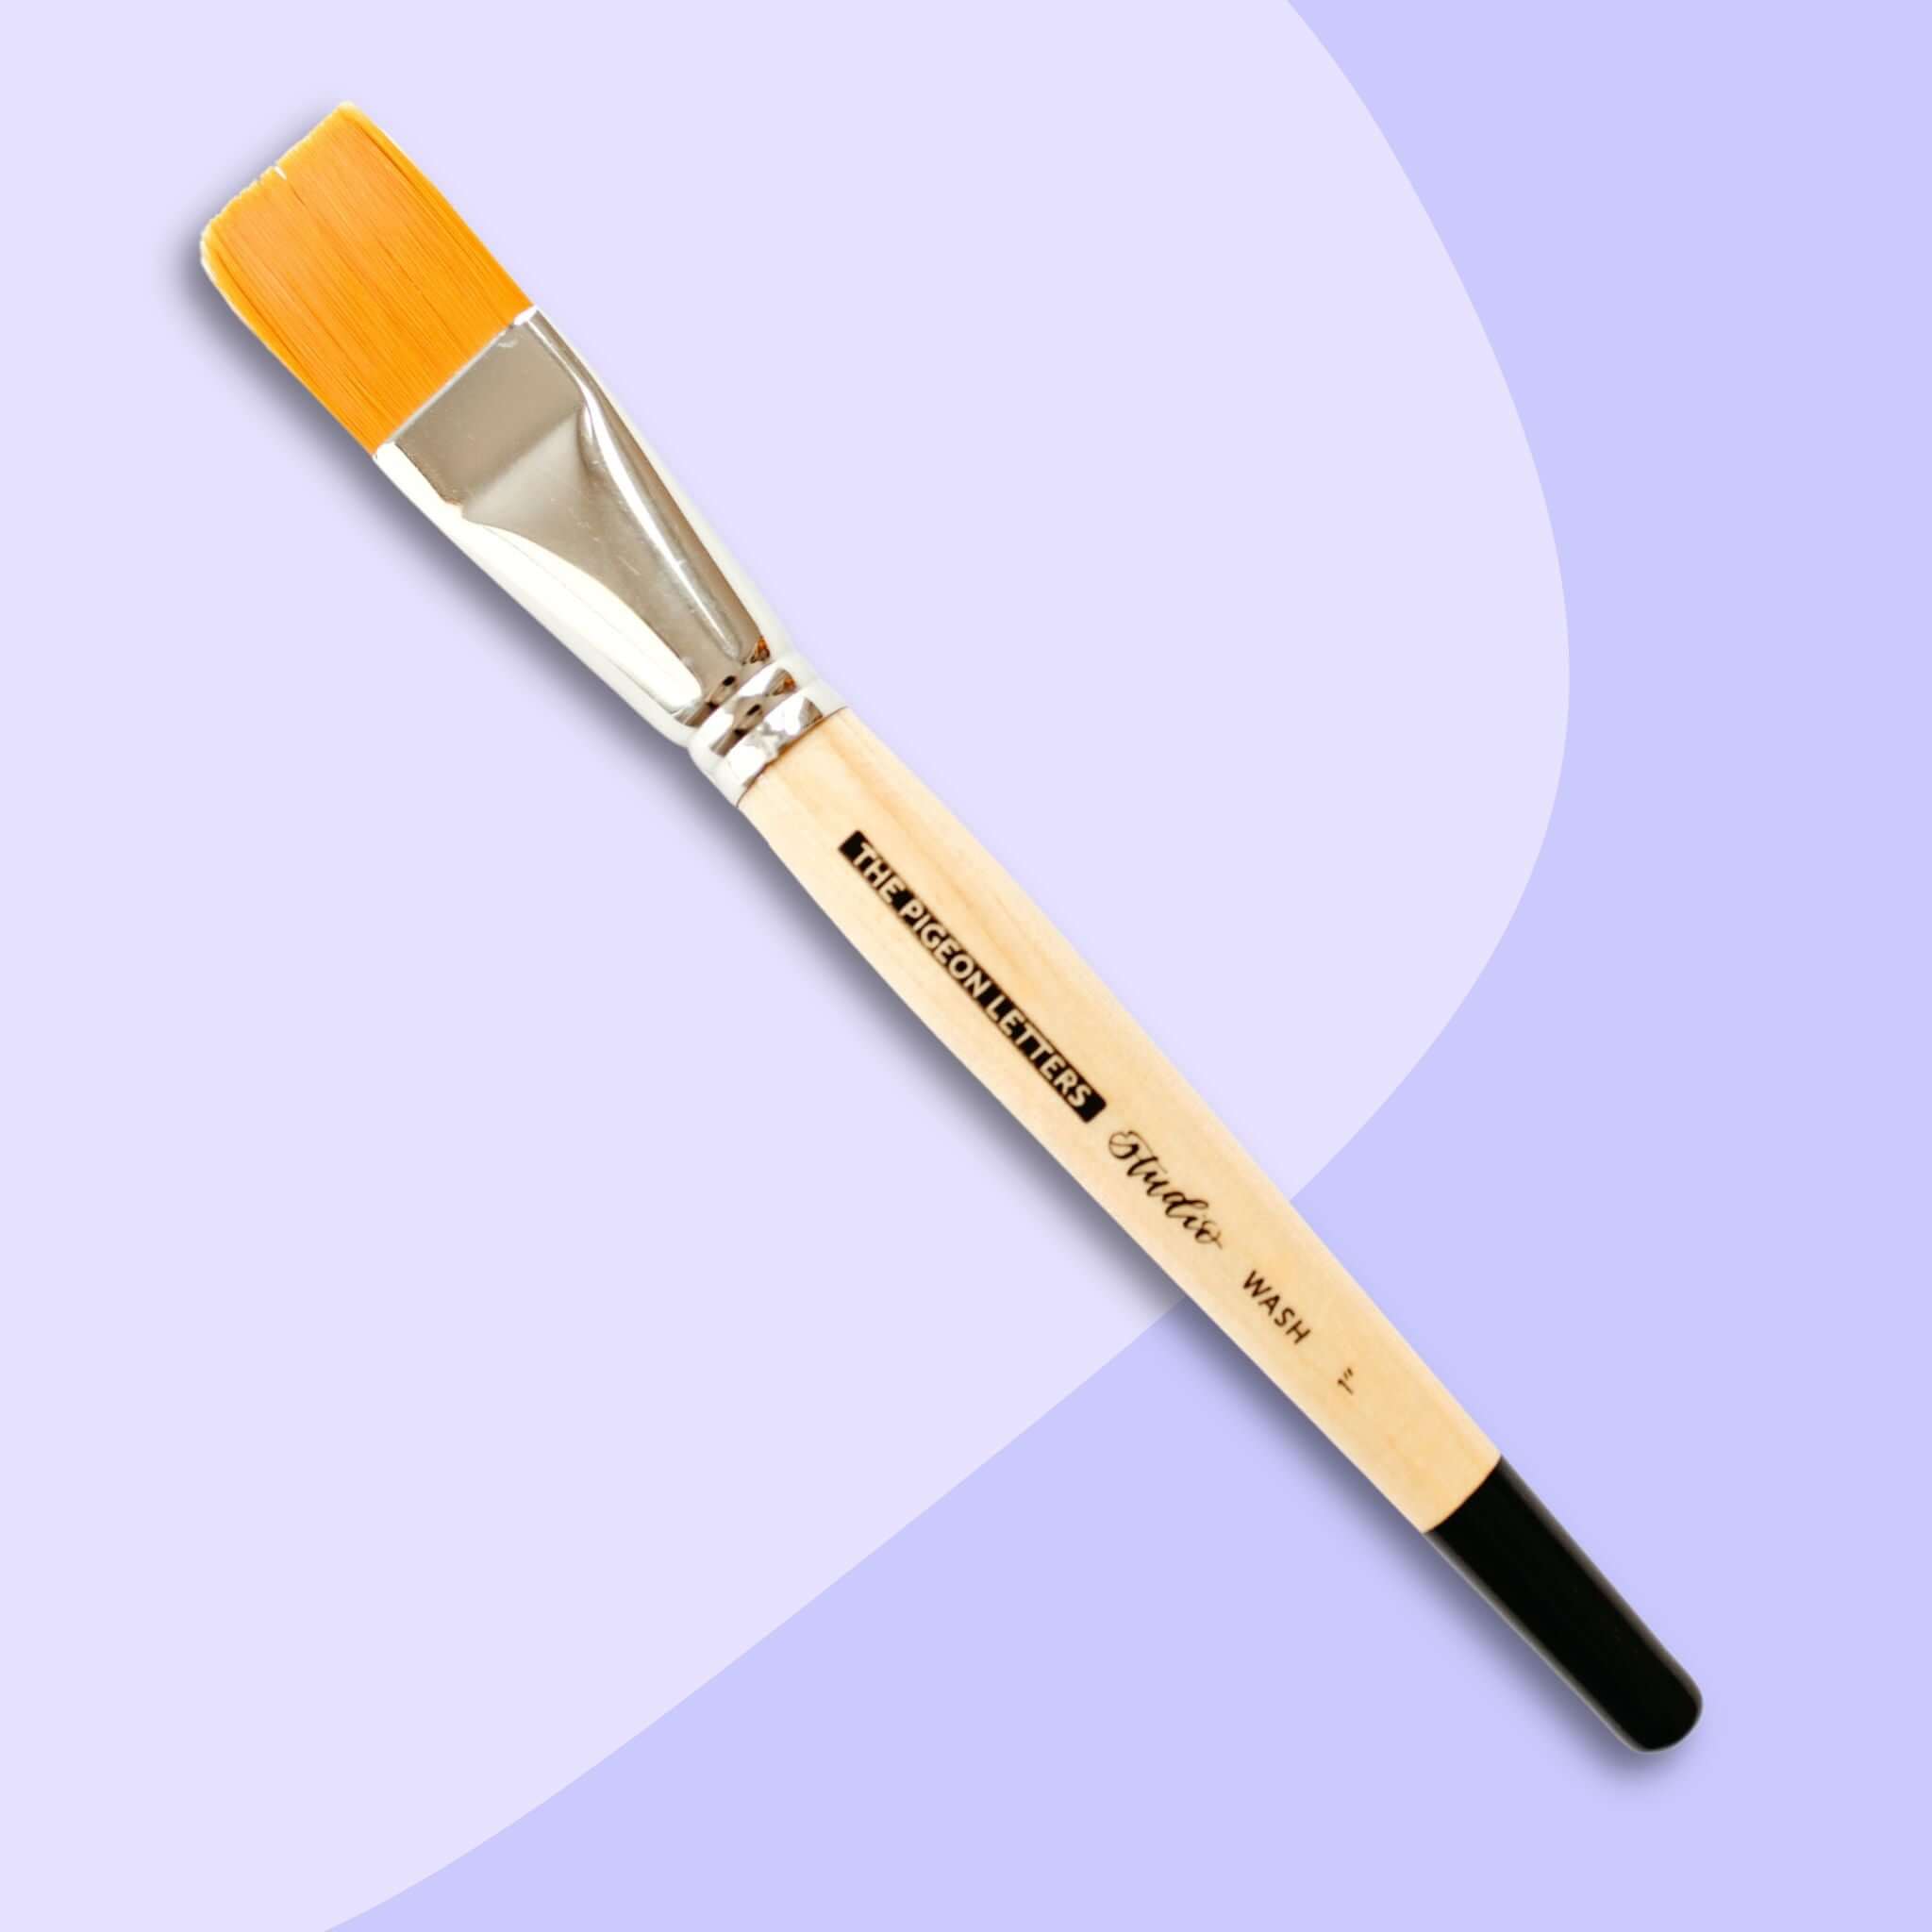 Filbert Brushes - Filbert Paint Brush - Paint Brushes